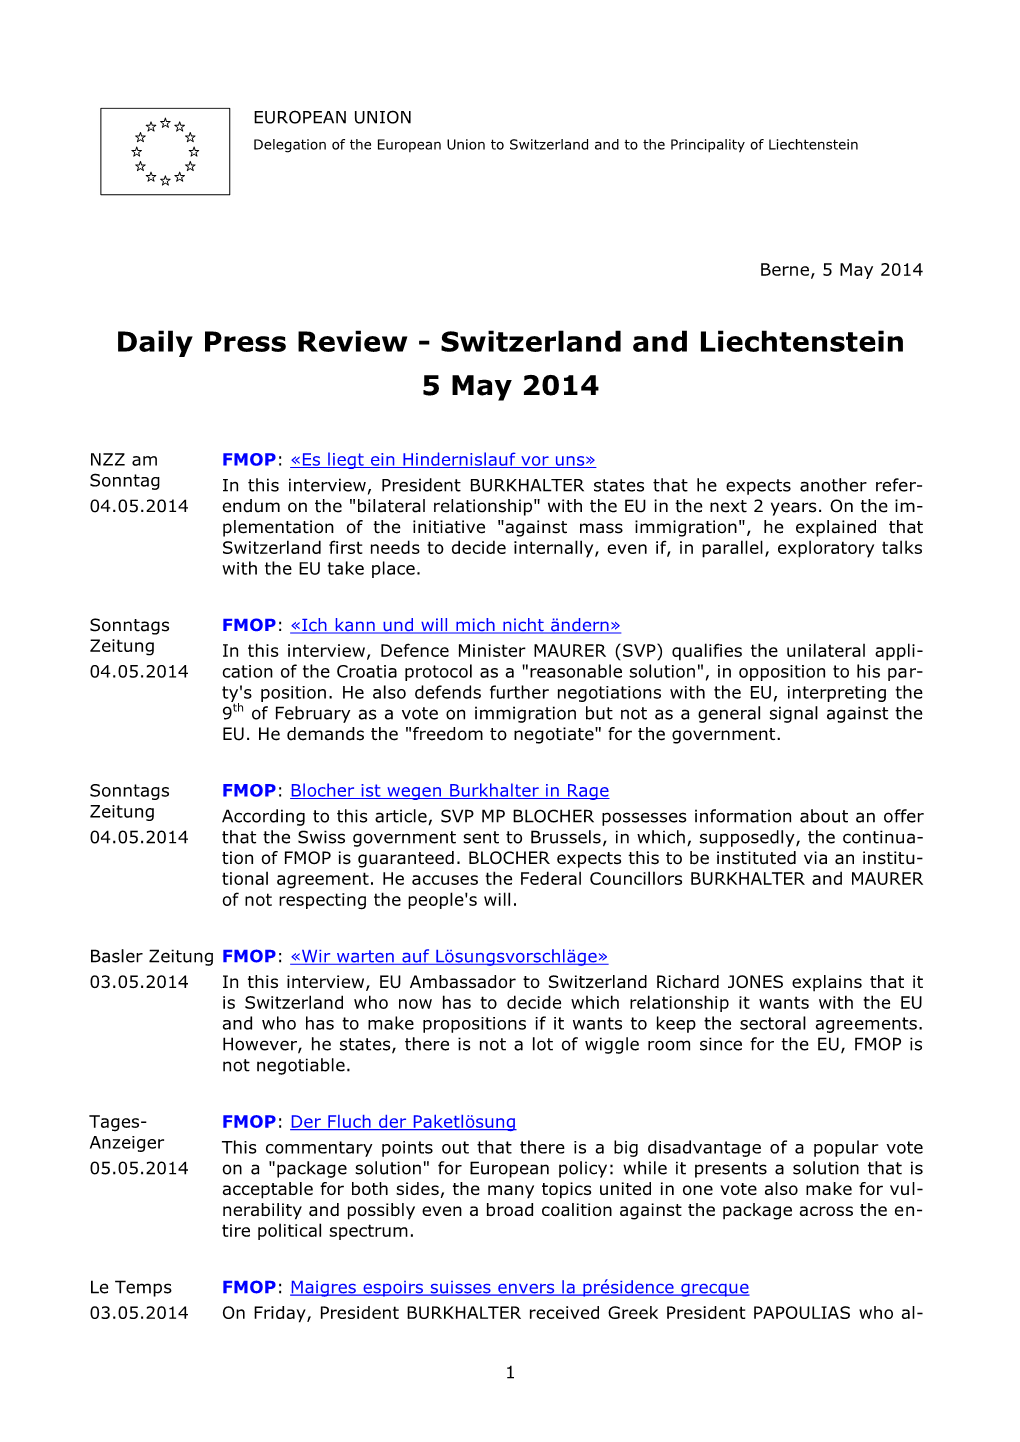 Daily Press Review - Switzerland and Liechtenstein 5 May 2014